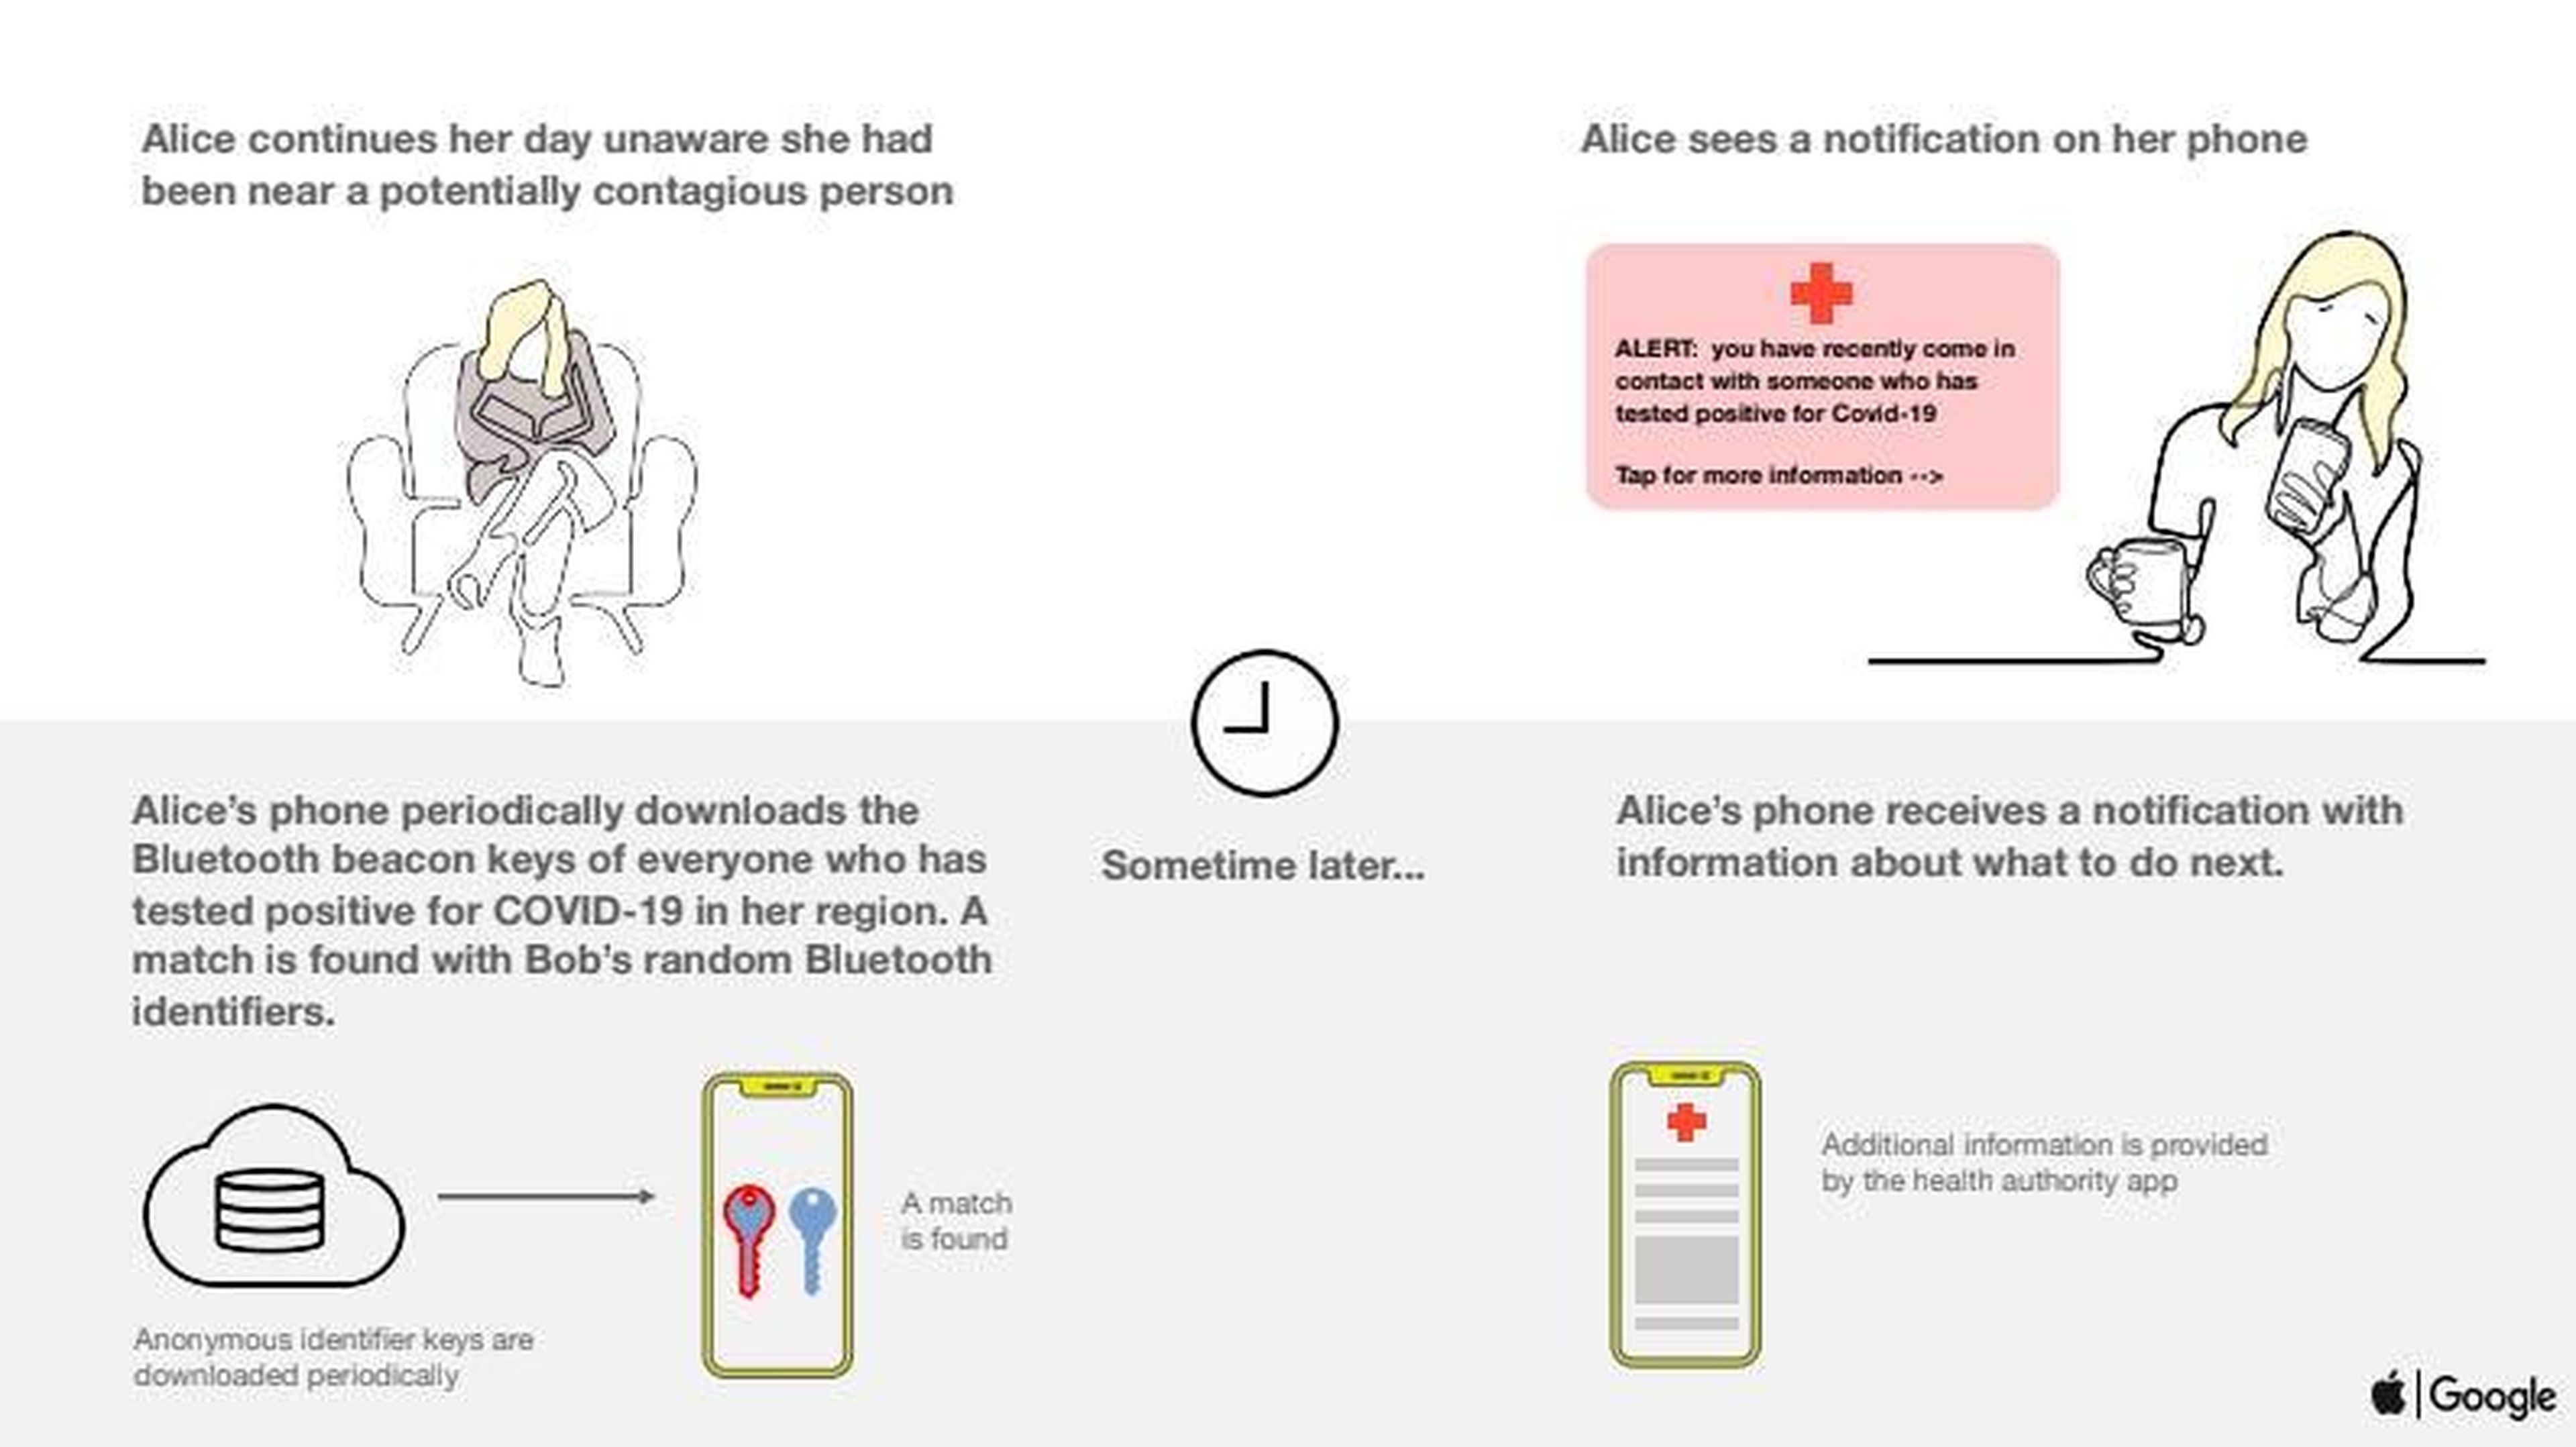 Para preservar el anonimato, los usuarios recibirán la notificación de que se han cruzado con un contagiado por coronavirus "un tiempo después": la tecnología no mandará notificaciones en tiempo real.